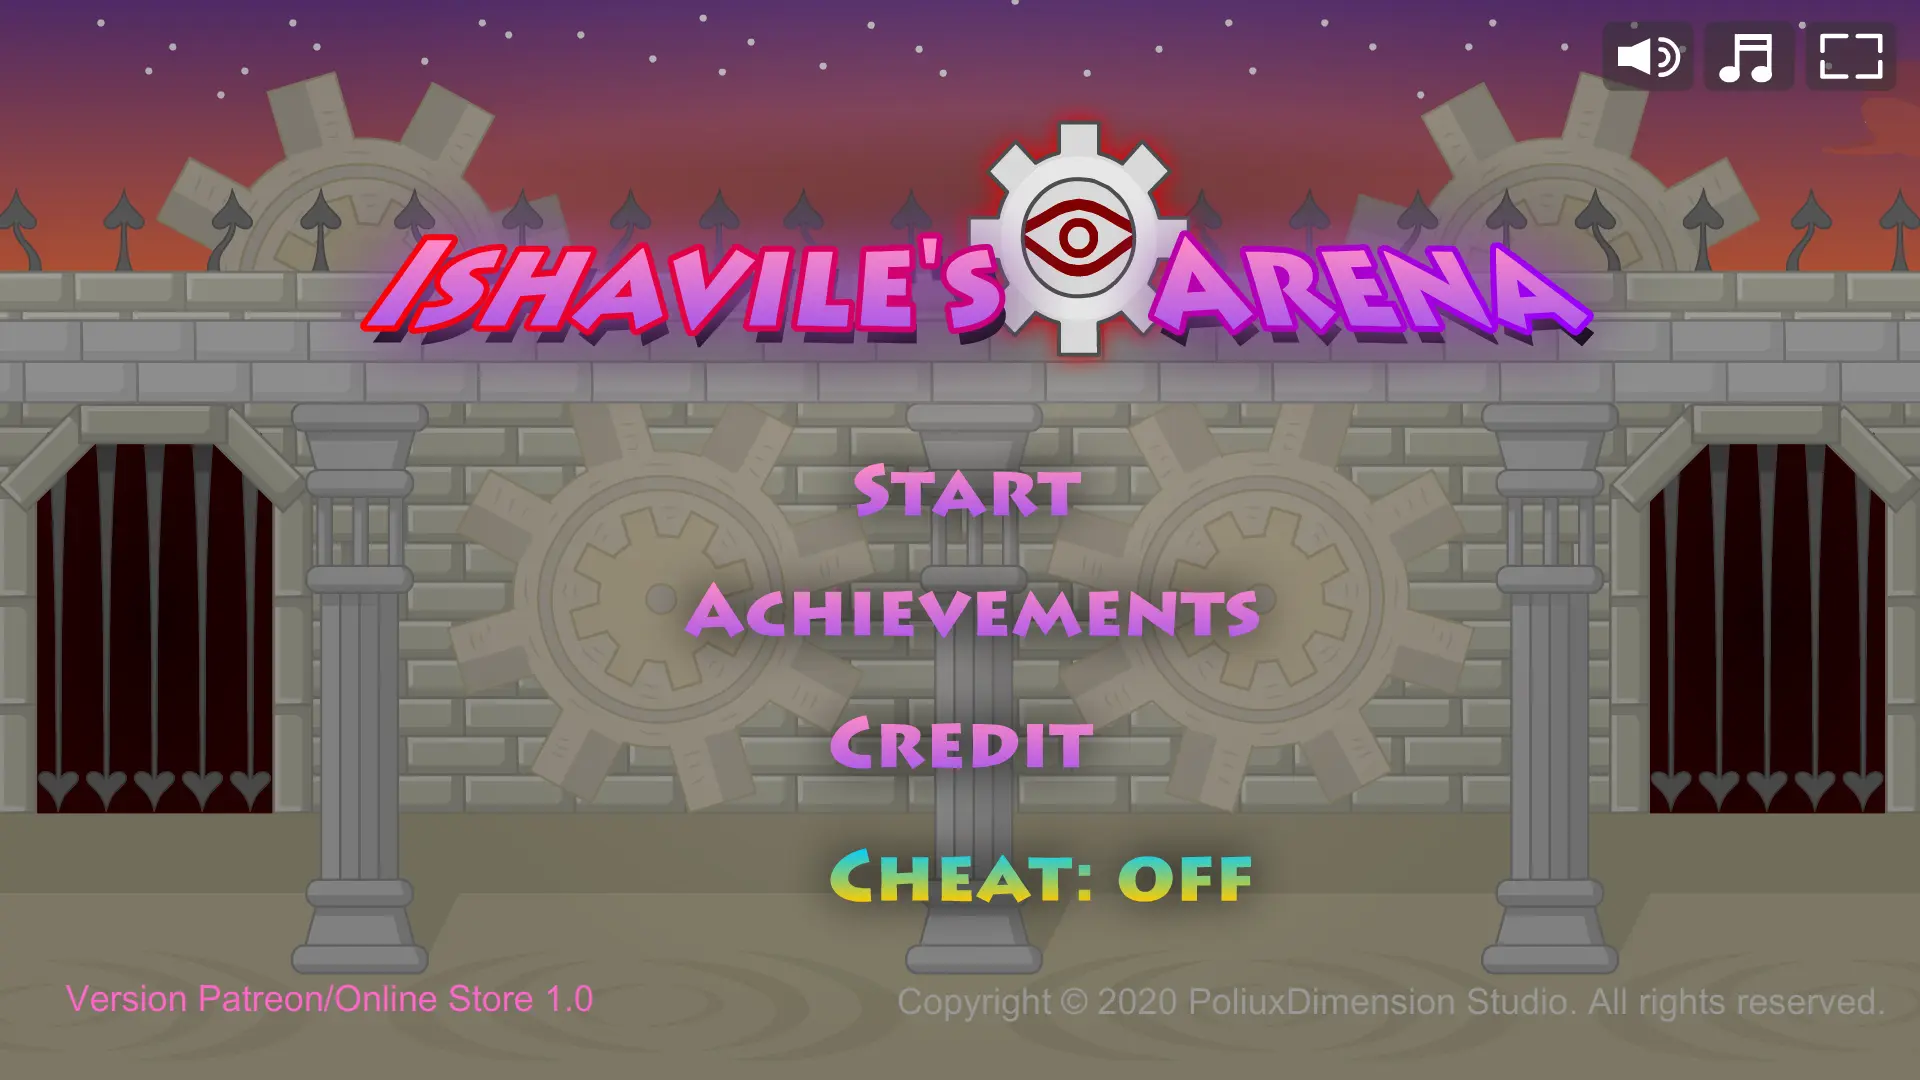 Ishavile's Arena main image